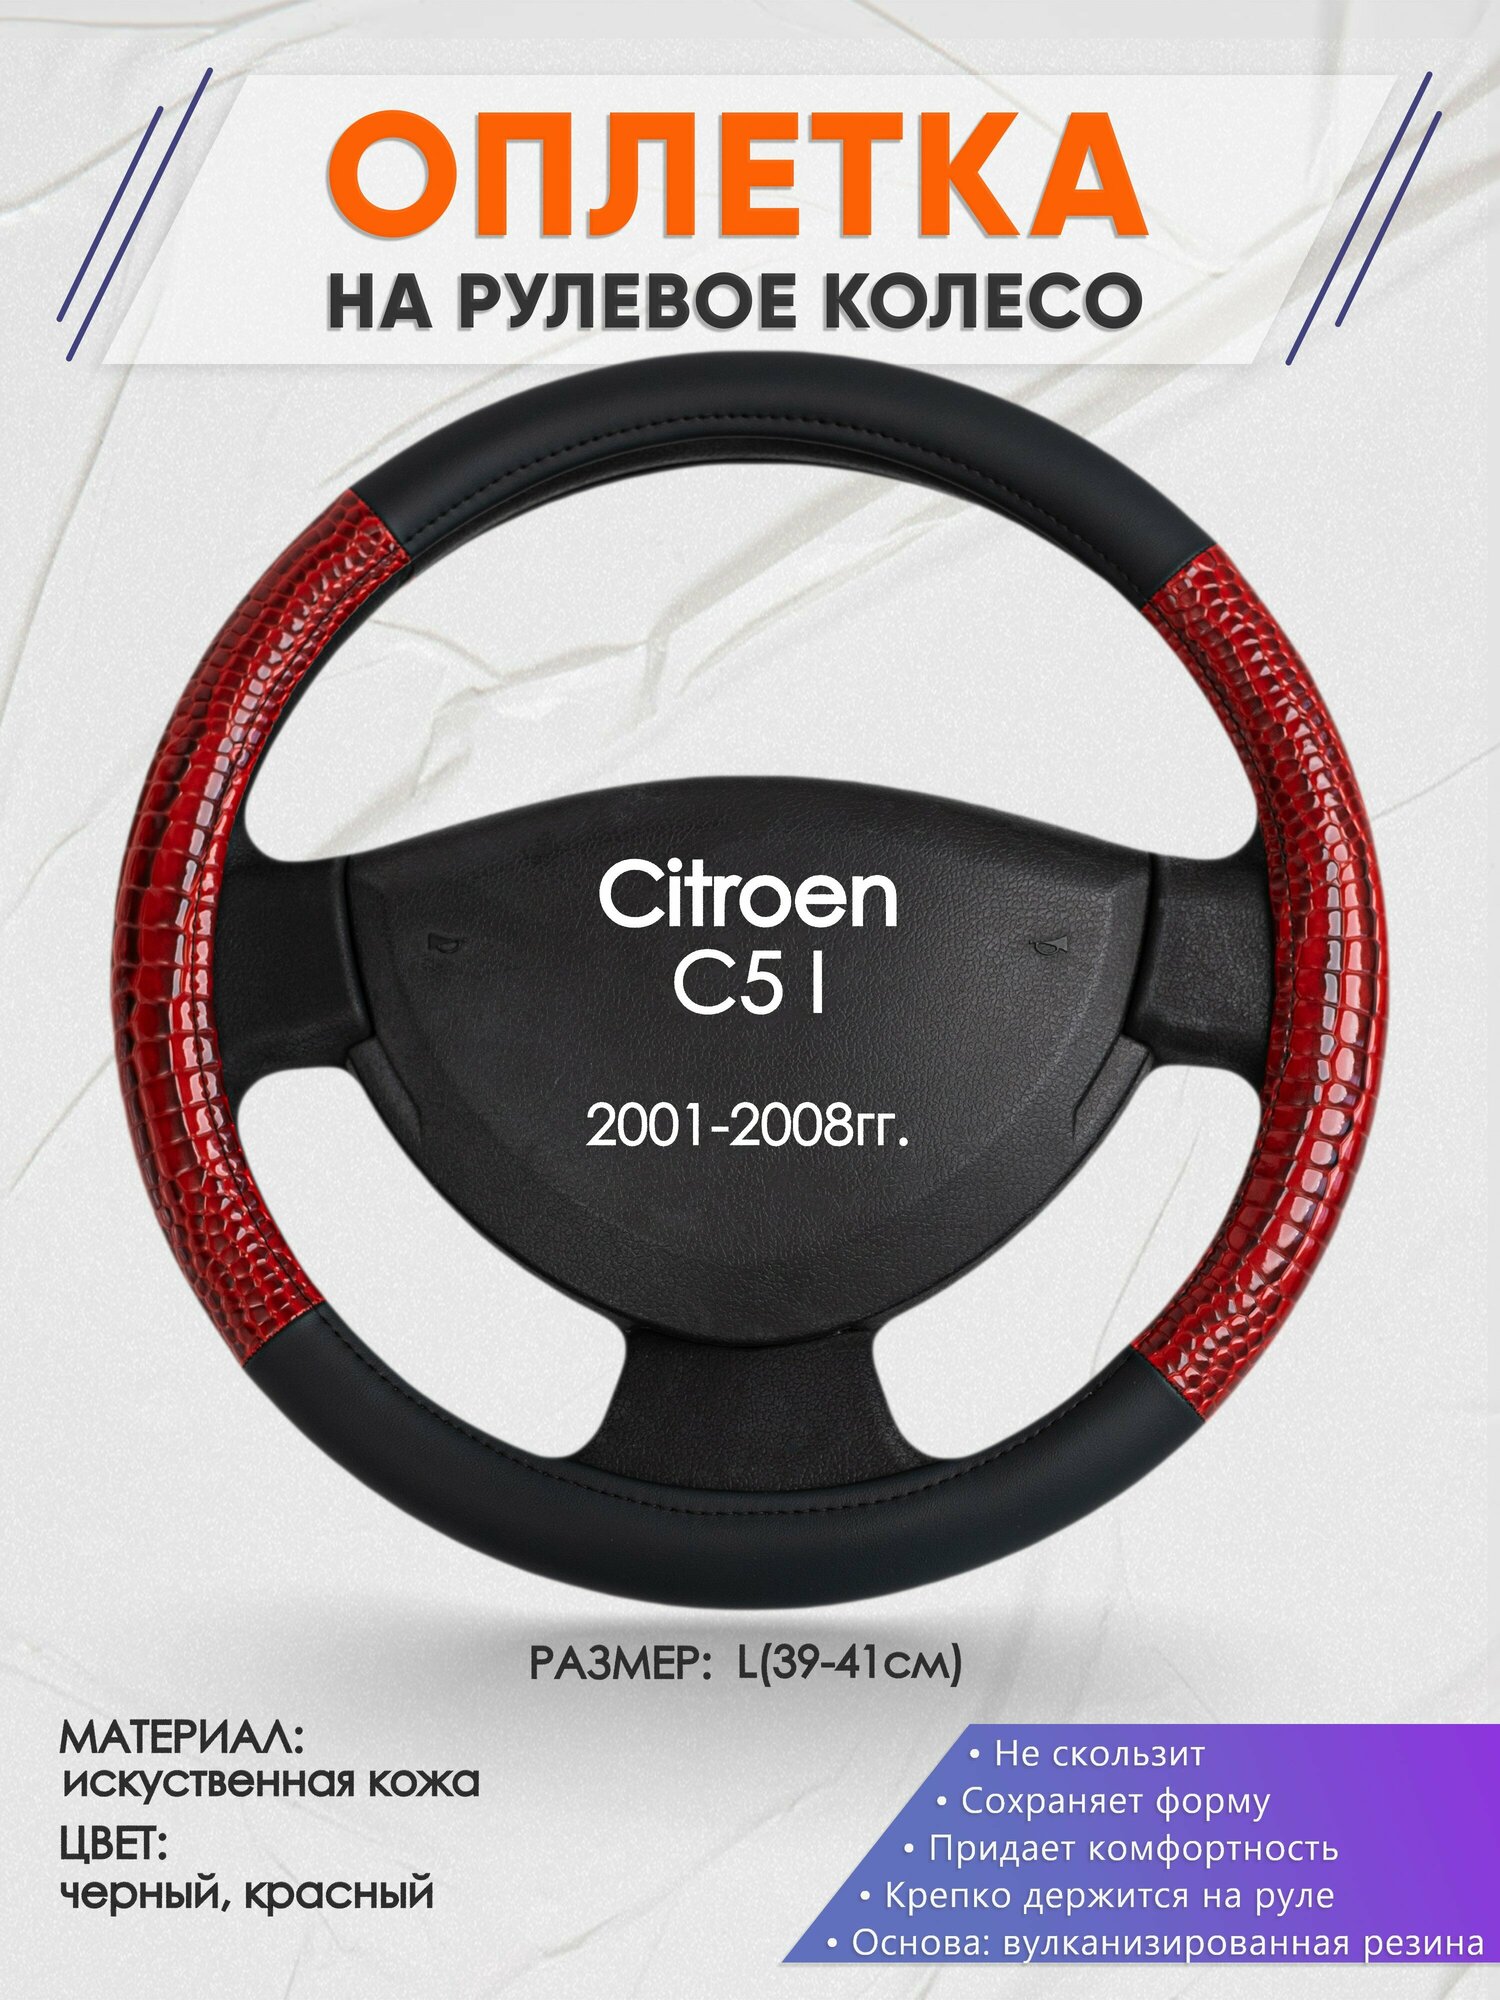 Оплетка на руль для Citroen C5 I(Ситроен С5 1 поколение) 2001-2008, L(39-41см), Искусственная кожа 16